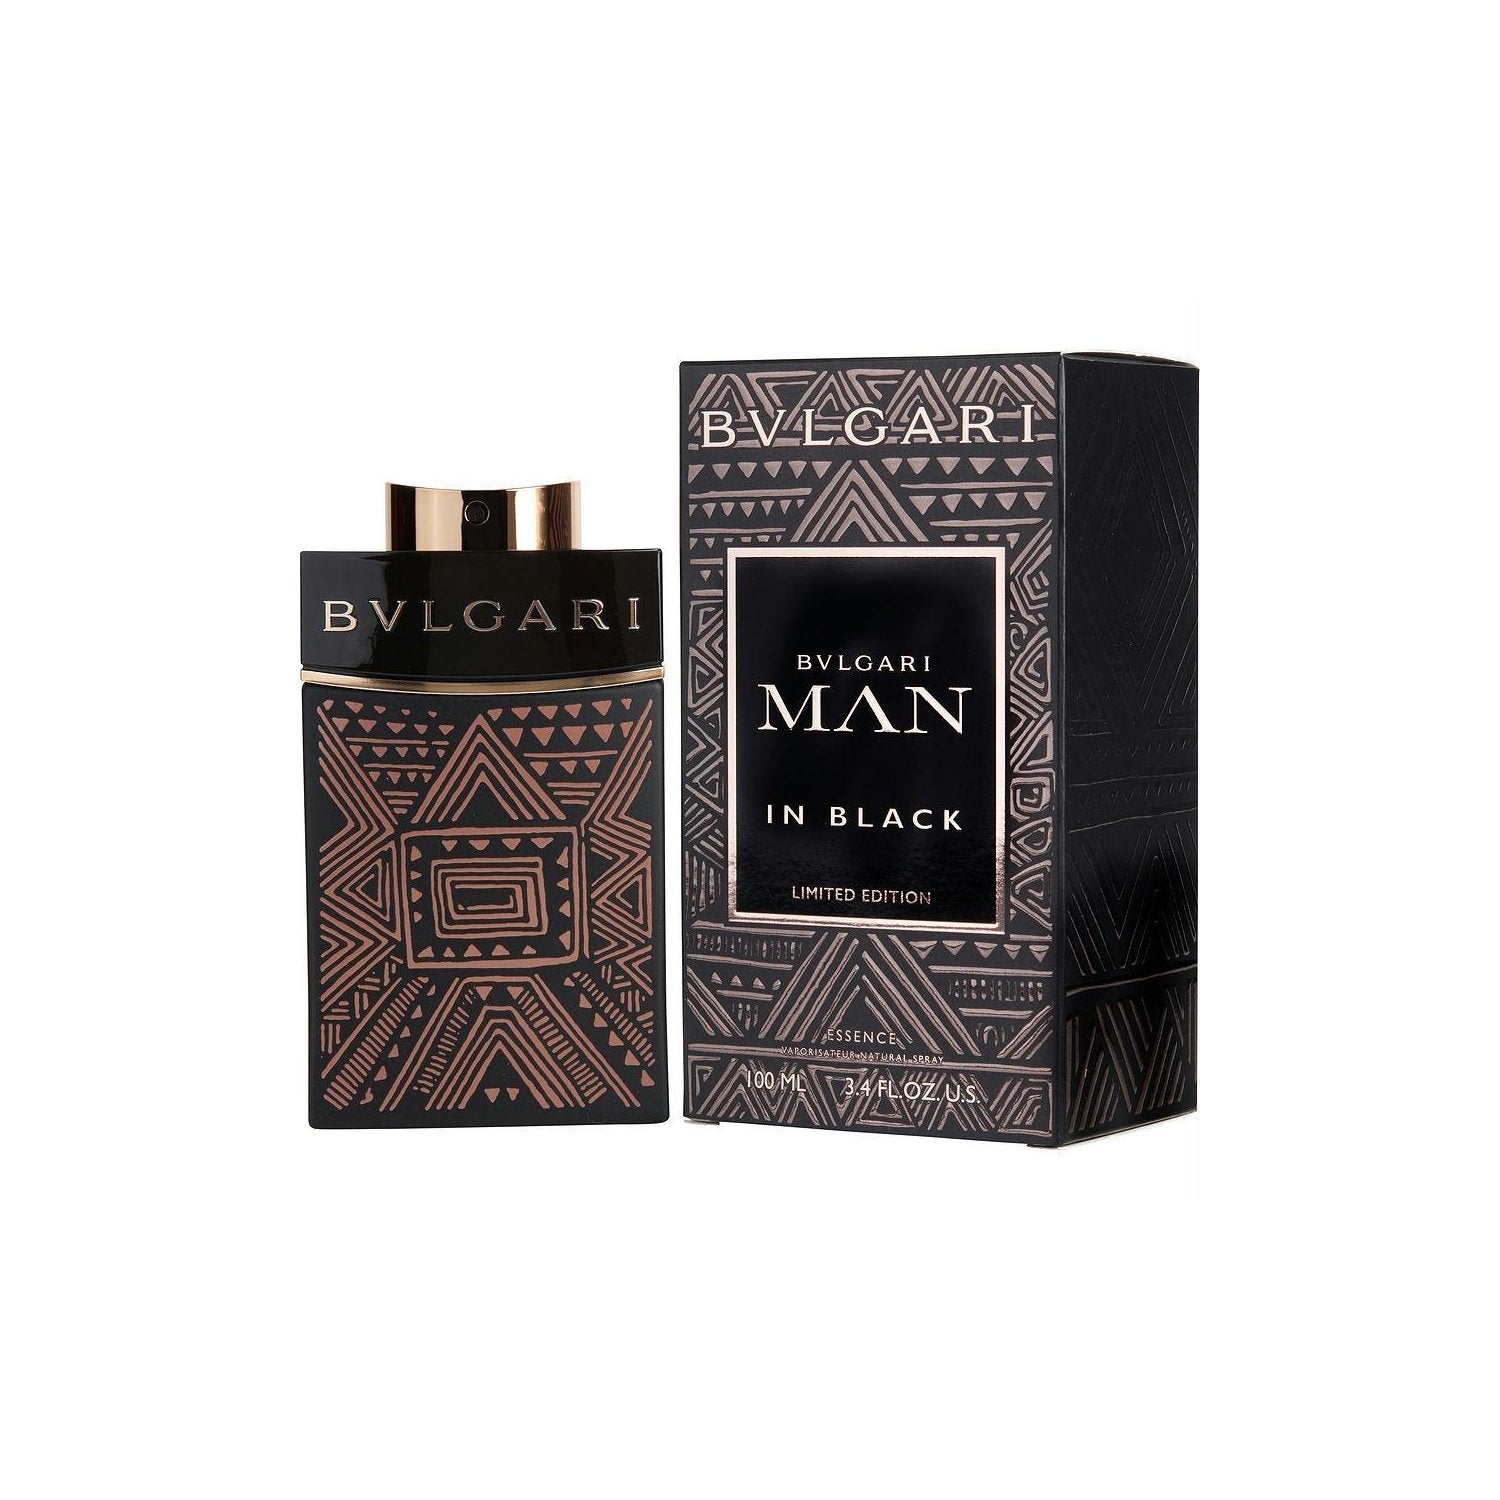 Bvlgari Man in Black Essence Limited Edition Eau de Parfum 100ml - D'Scentsation